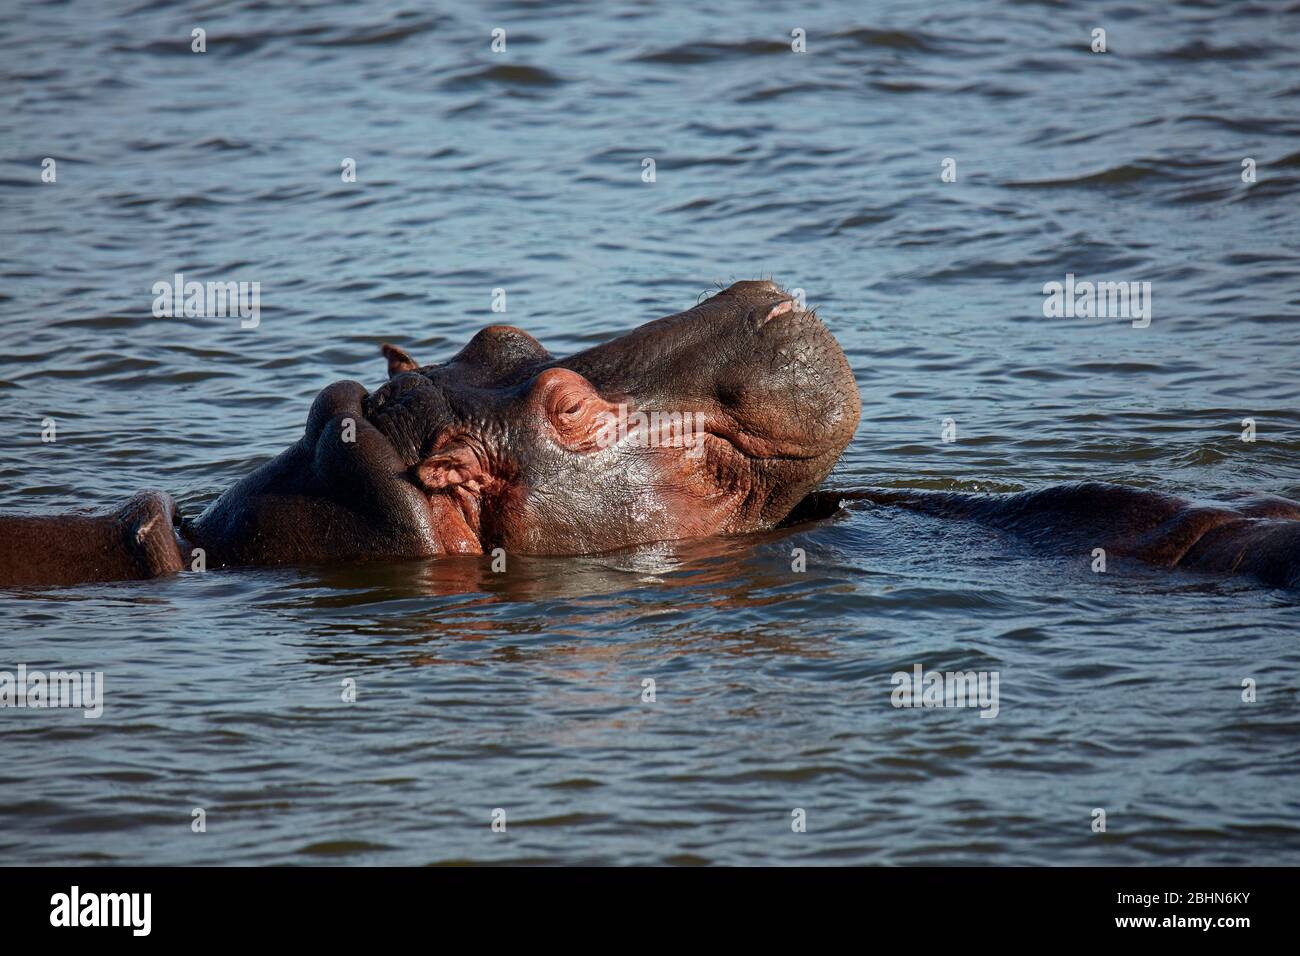 Hippopotamus (Hippopotamus amphibius), rivière Zambèze, près des chutes Victoria, Zimbabwe, Afrique Banque D'Images